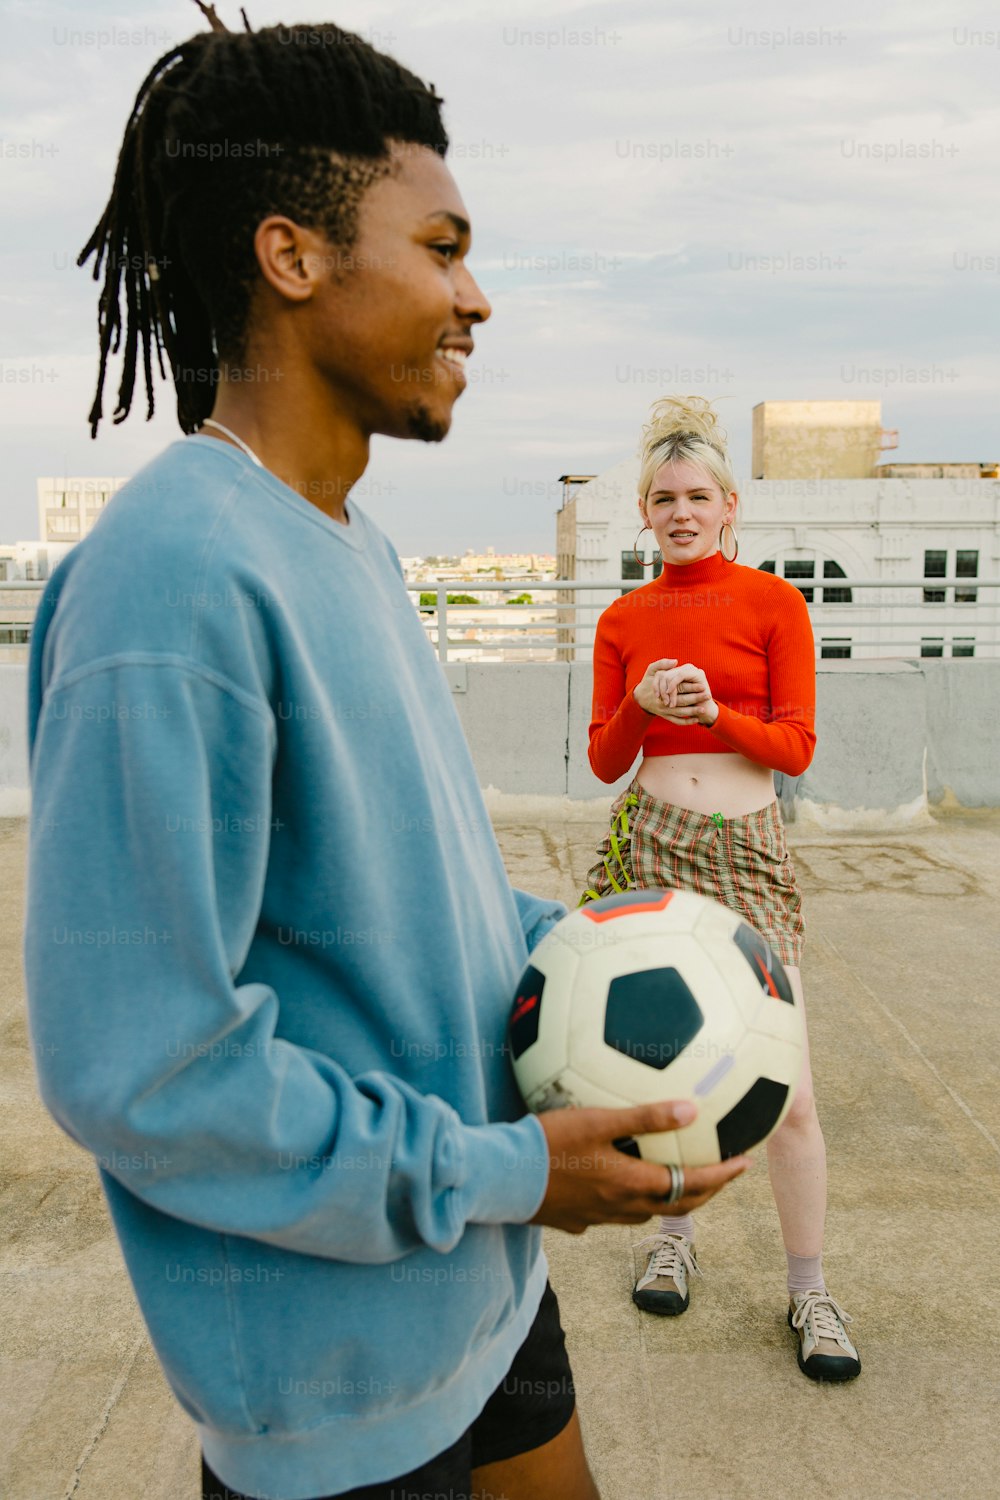 Un hombre sosteniendo un balón de fútbol junto a una mujer